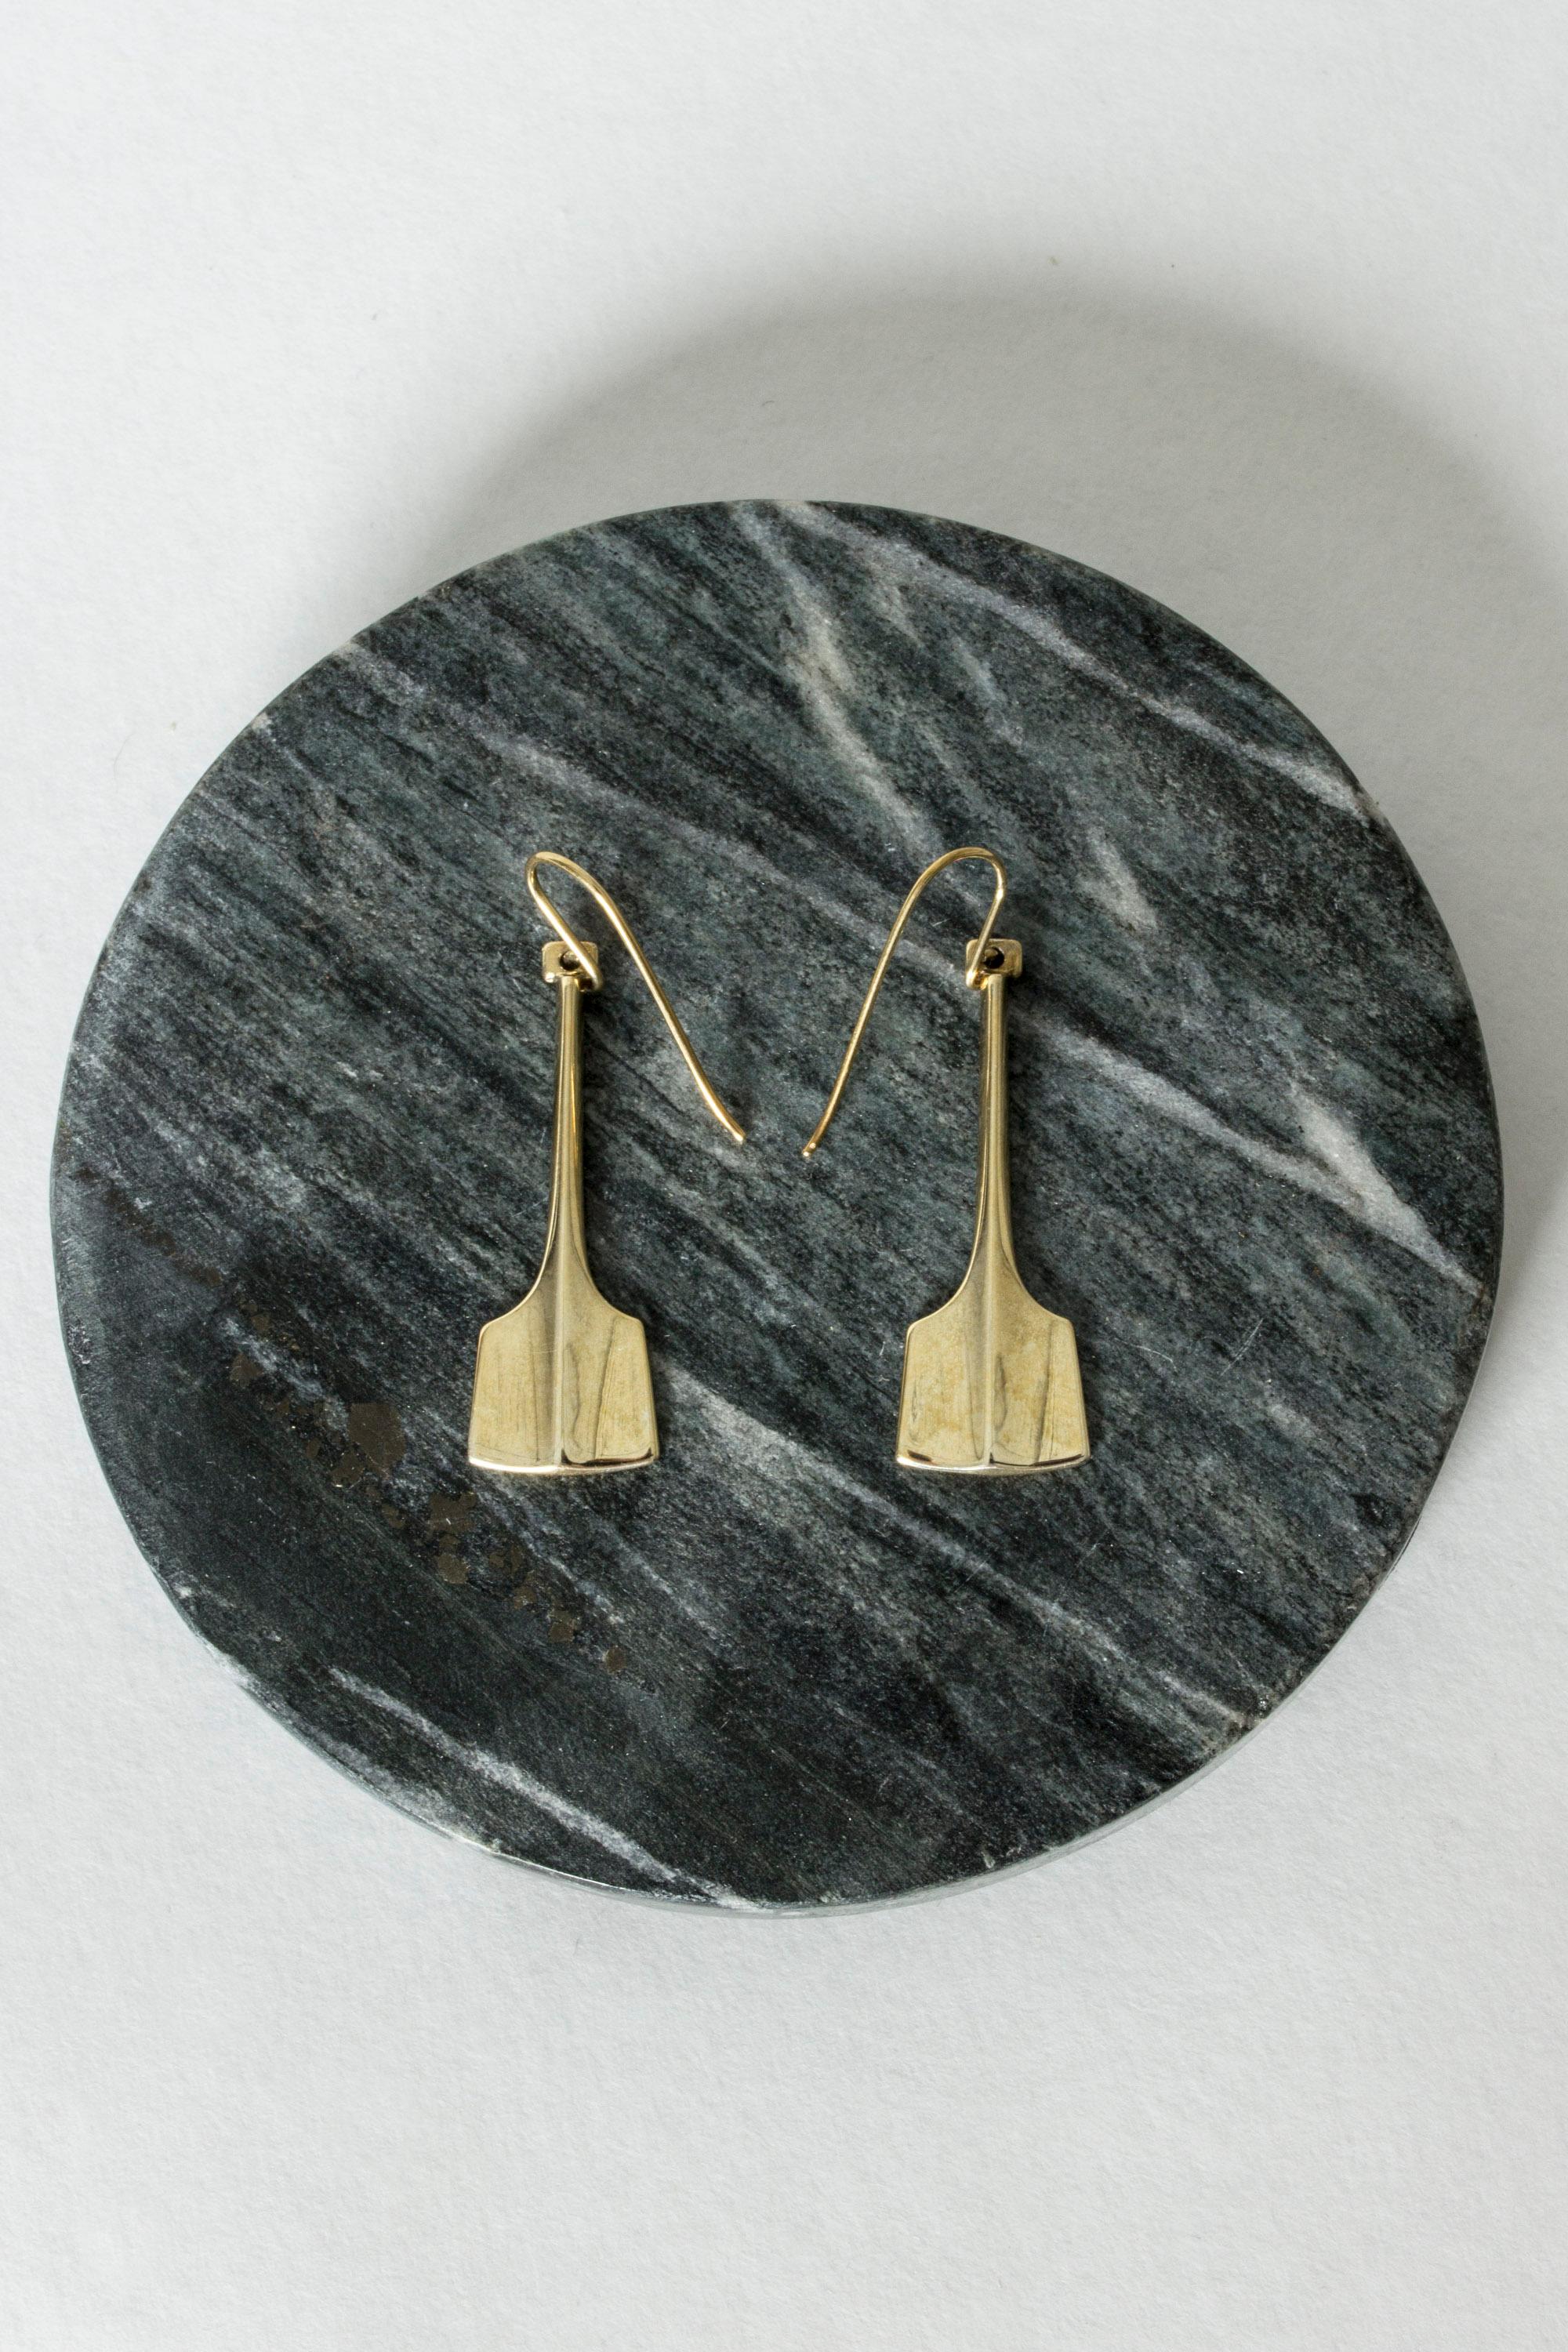 Modernist Pair of Silver Earrings by Bjørn Sigurd Østern for David Andersen, Norway, 1960s